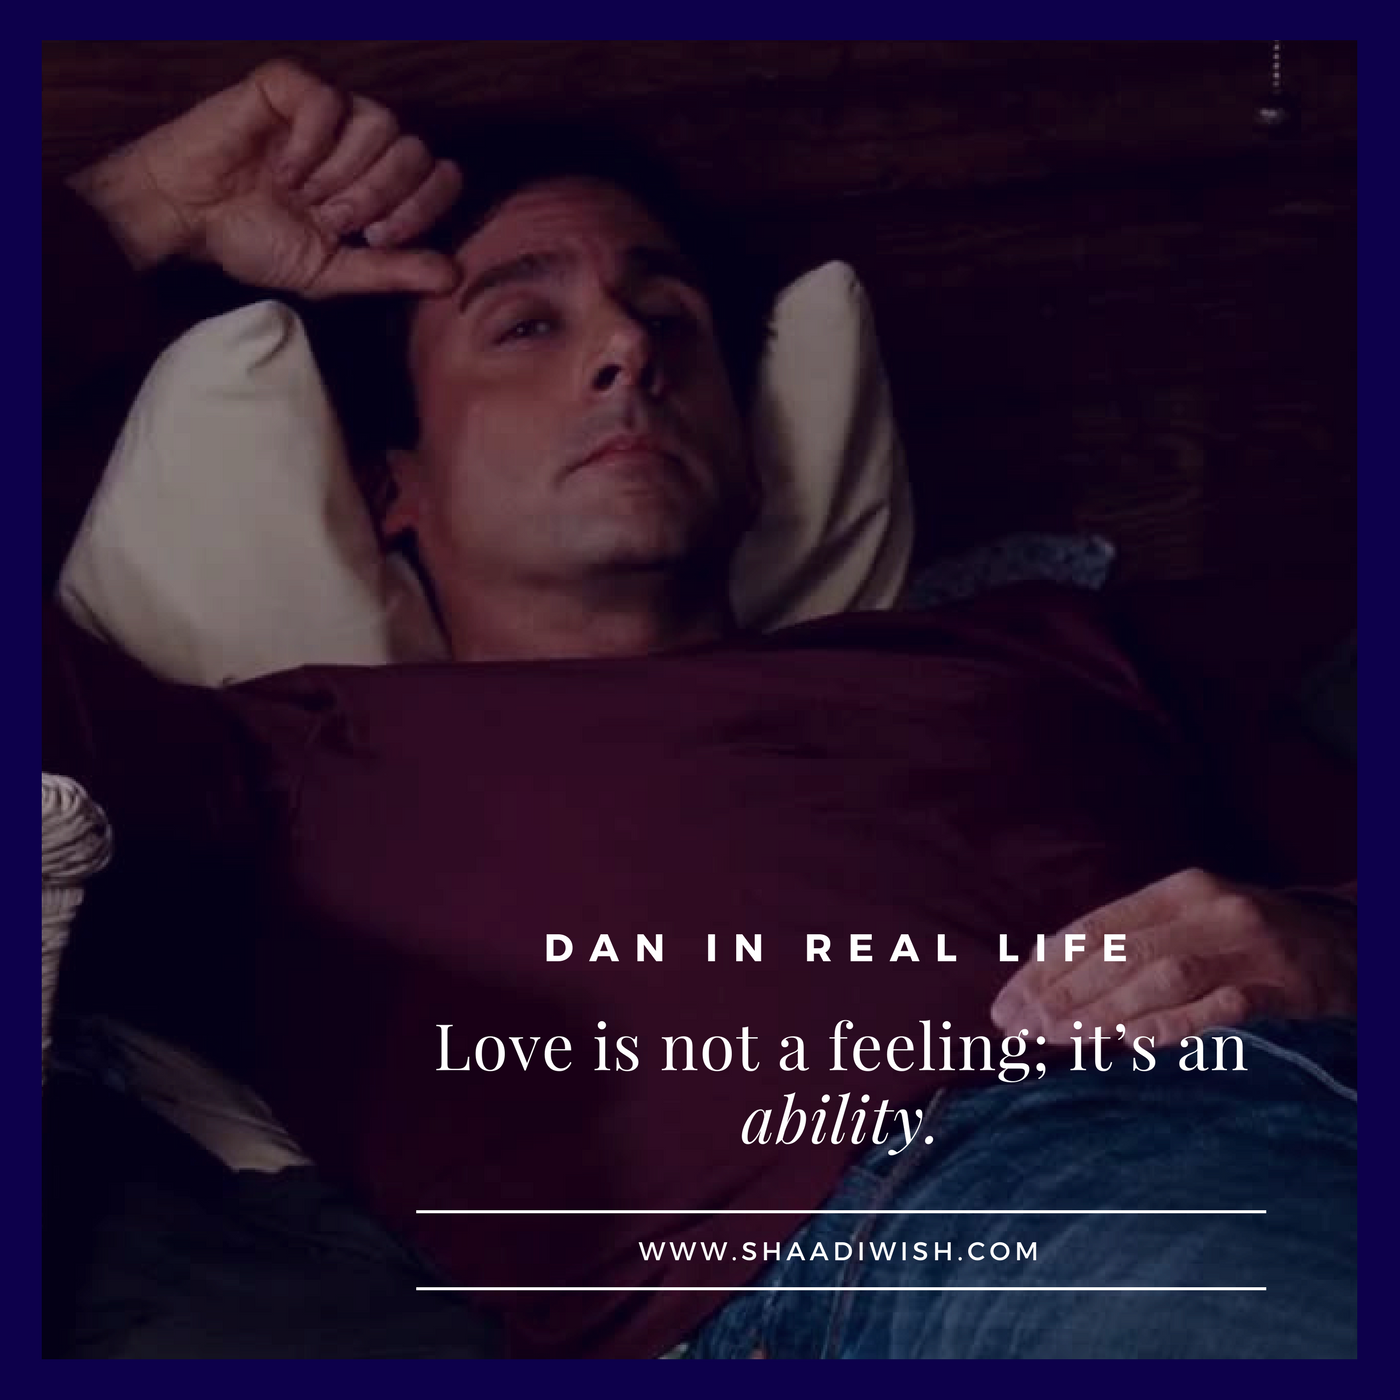 Dan in Real Life, love story, Steve Carell